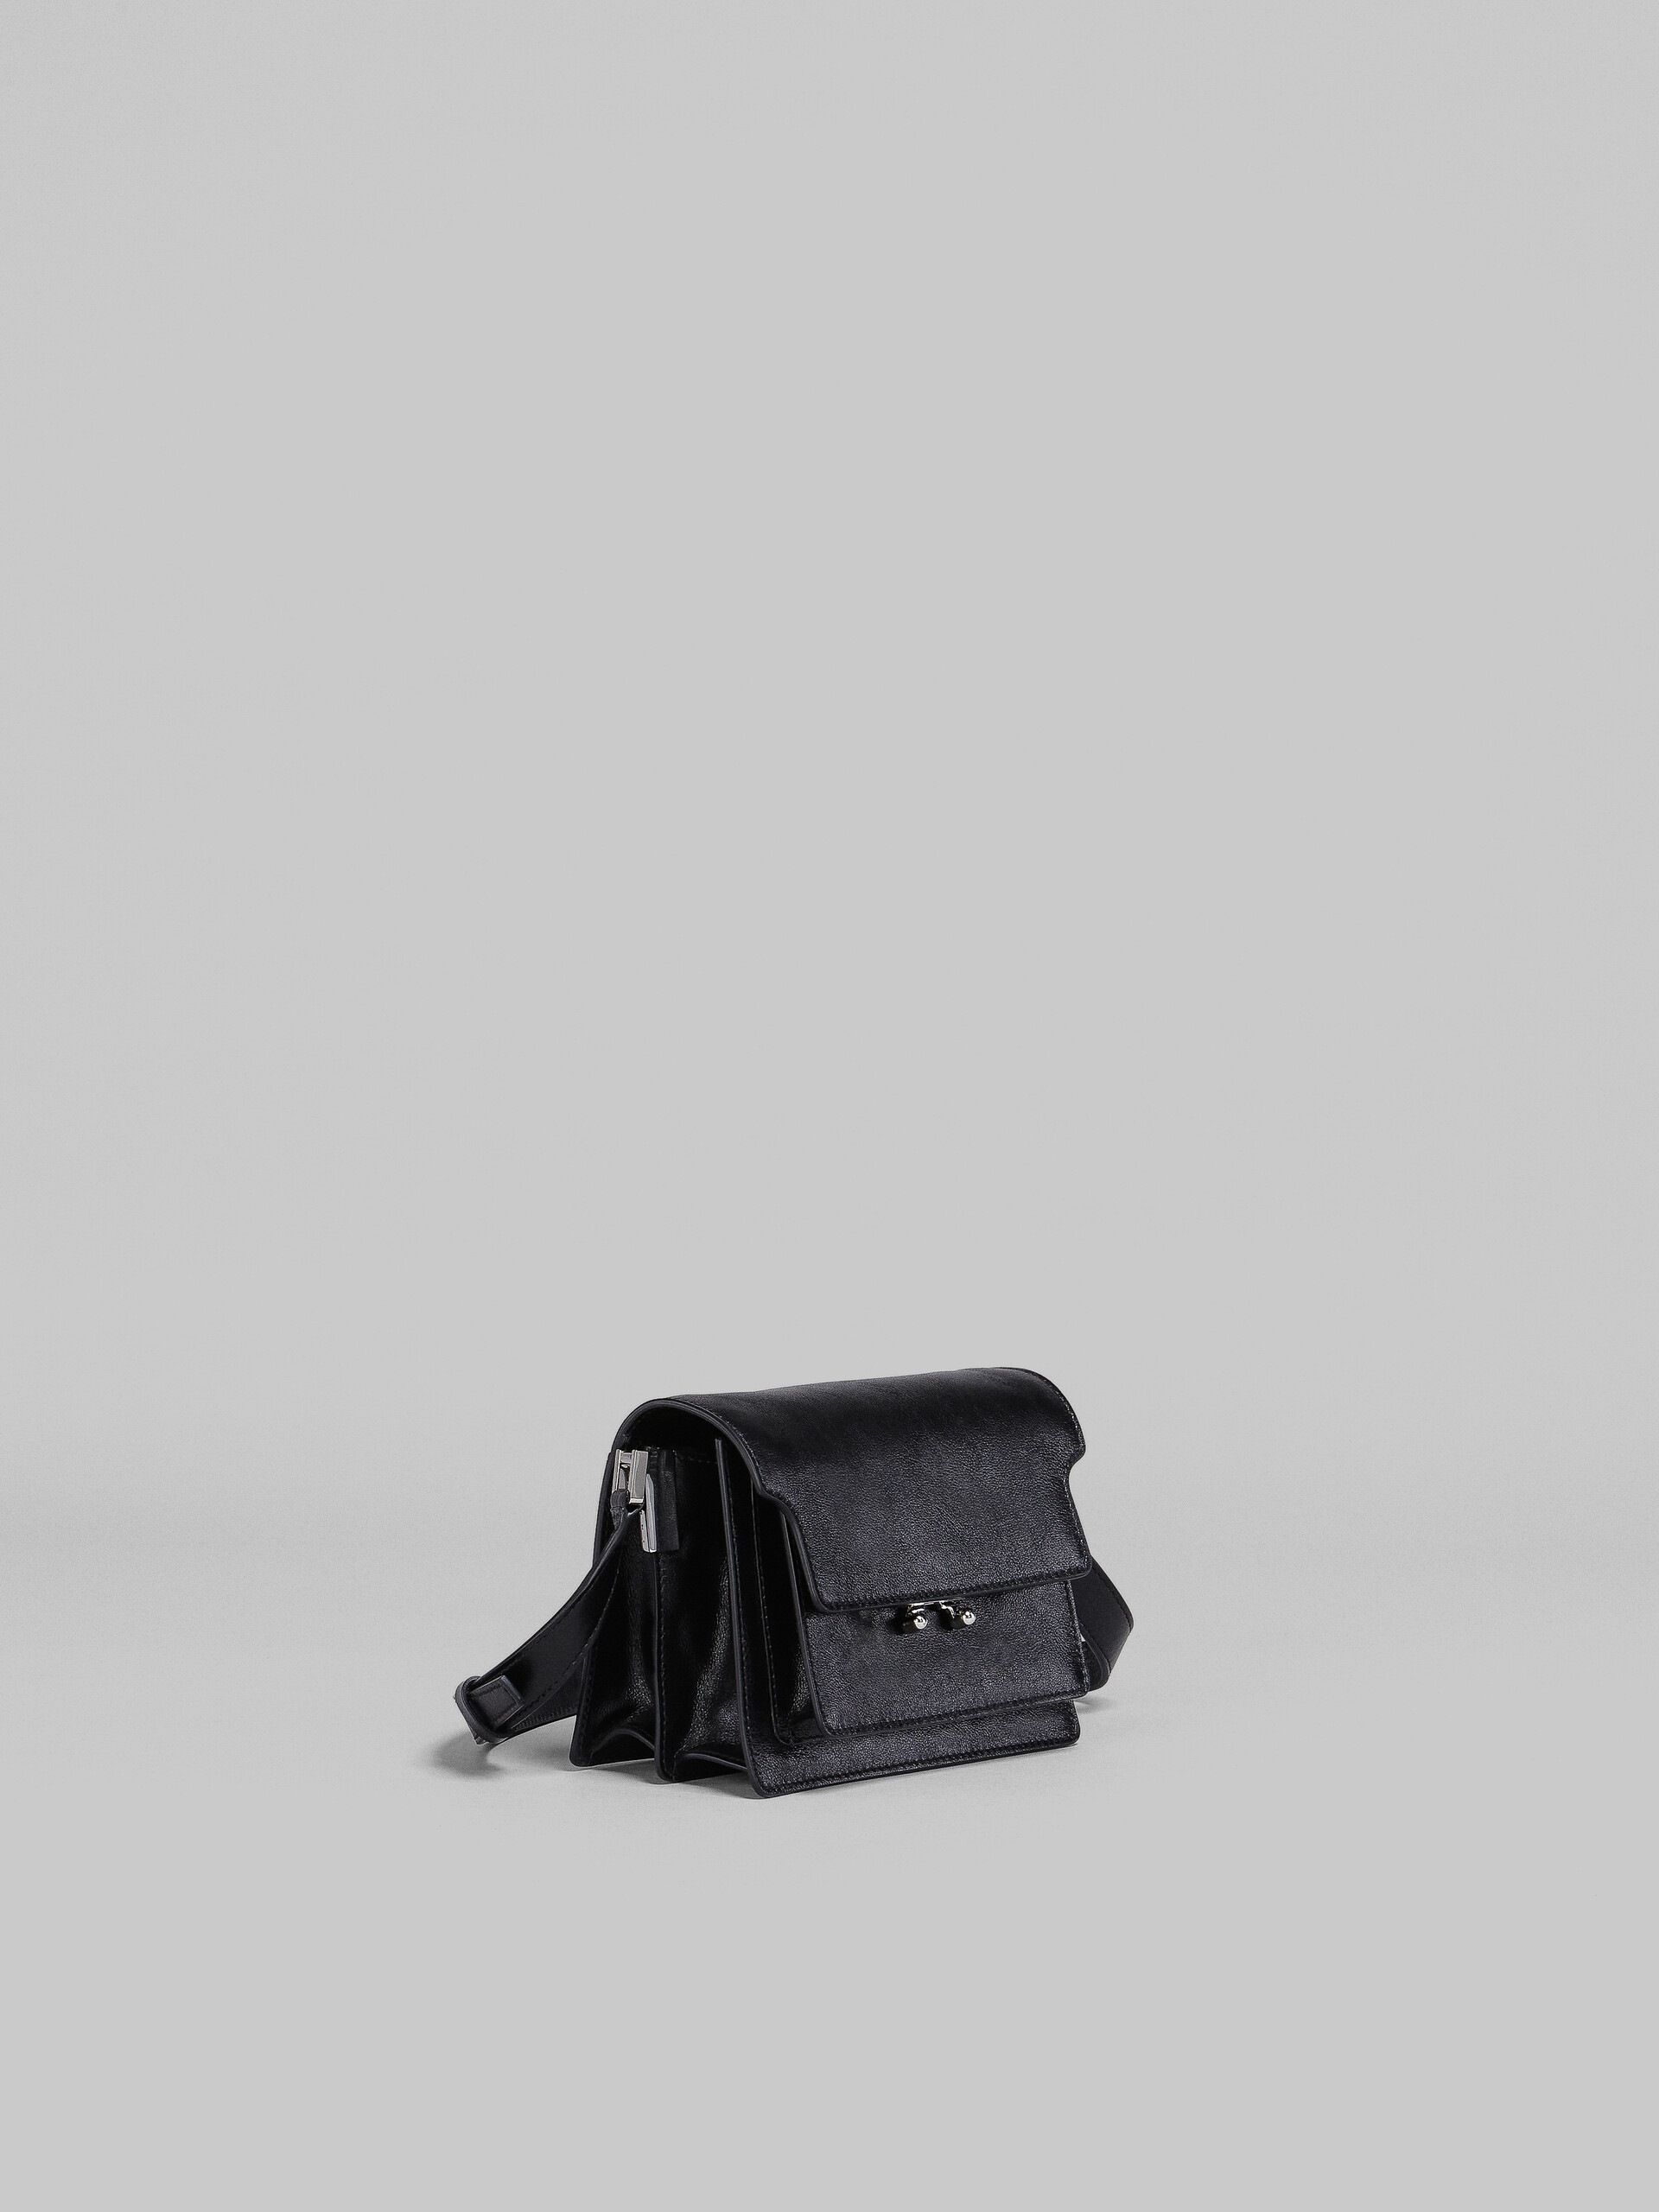 Mini-sac Trunk Soft en cuir noir - Sacs portés épaule - Image 6